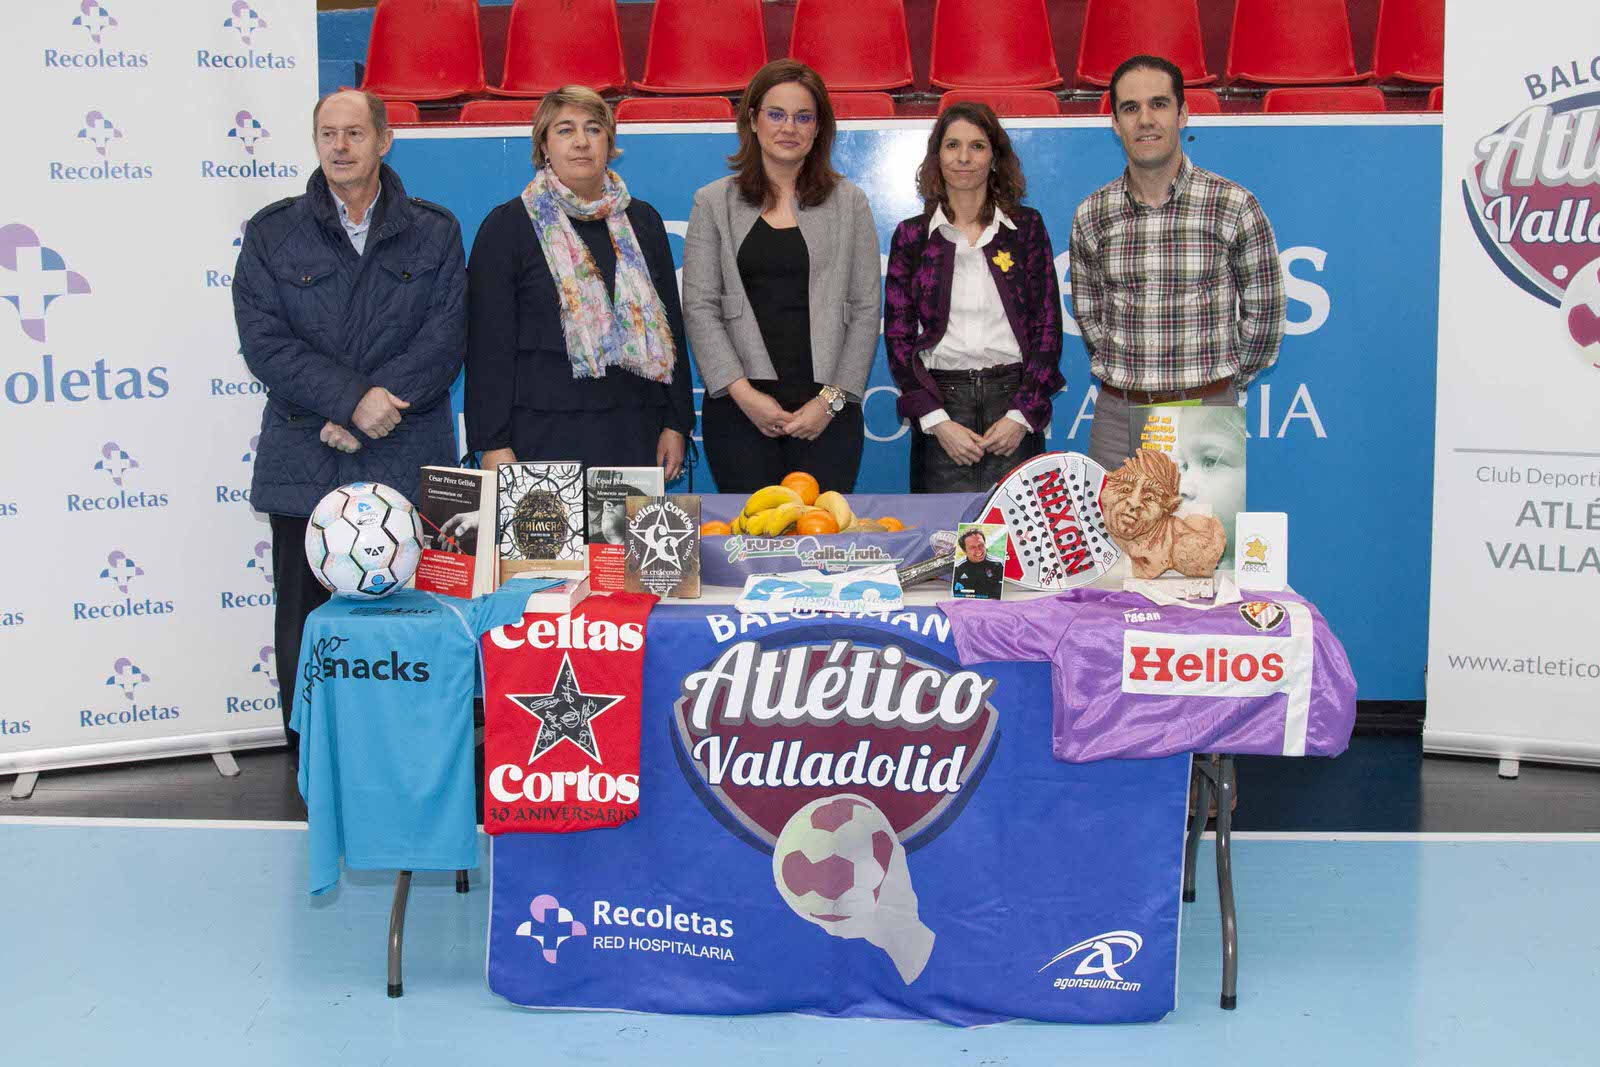 El club lanza la campaña ‘Hábitos y vida saludable con el Recoletas Atlético Valladolid’ para fomentar un estilo de vida más sano | Galería 1 / 24